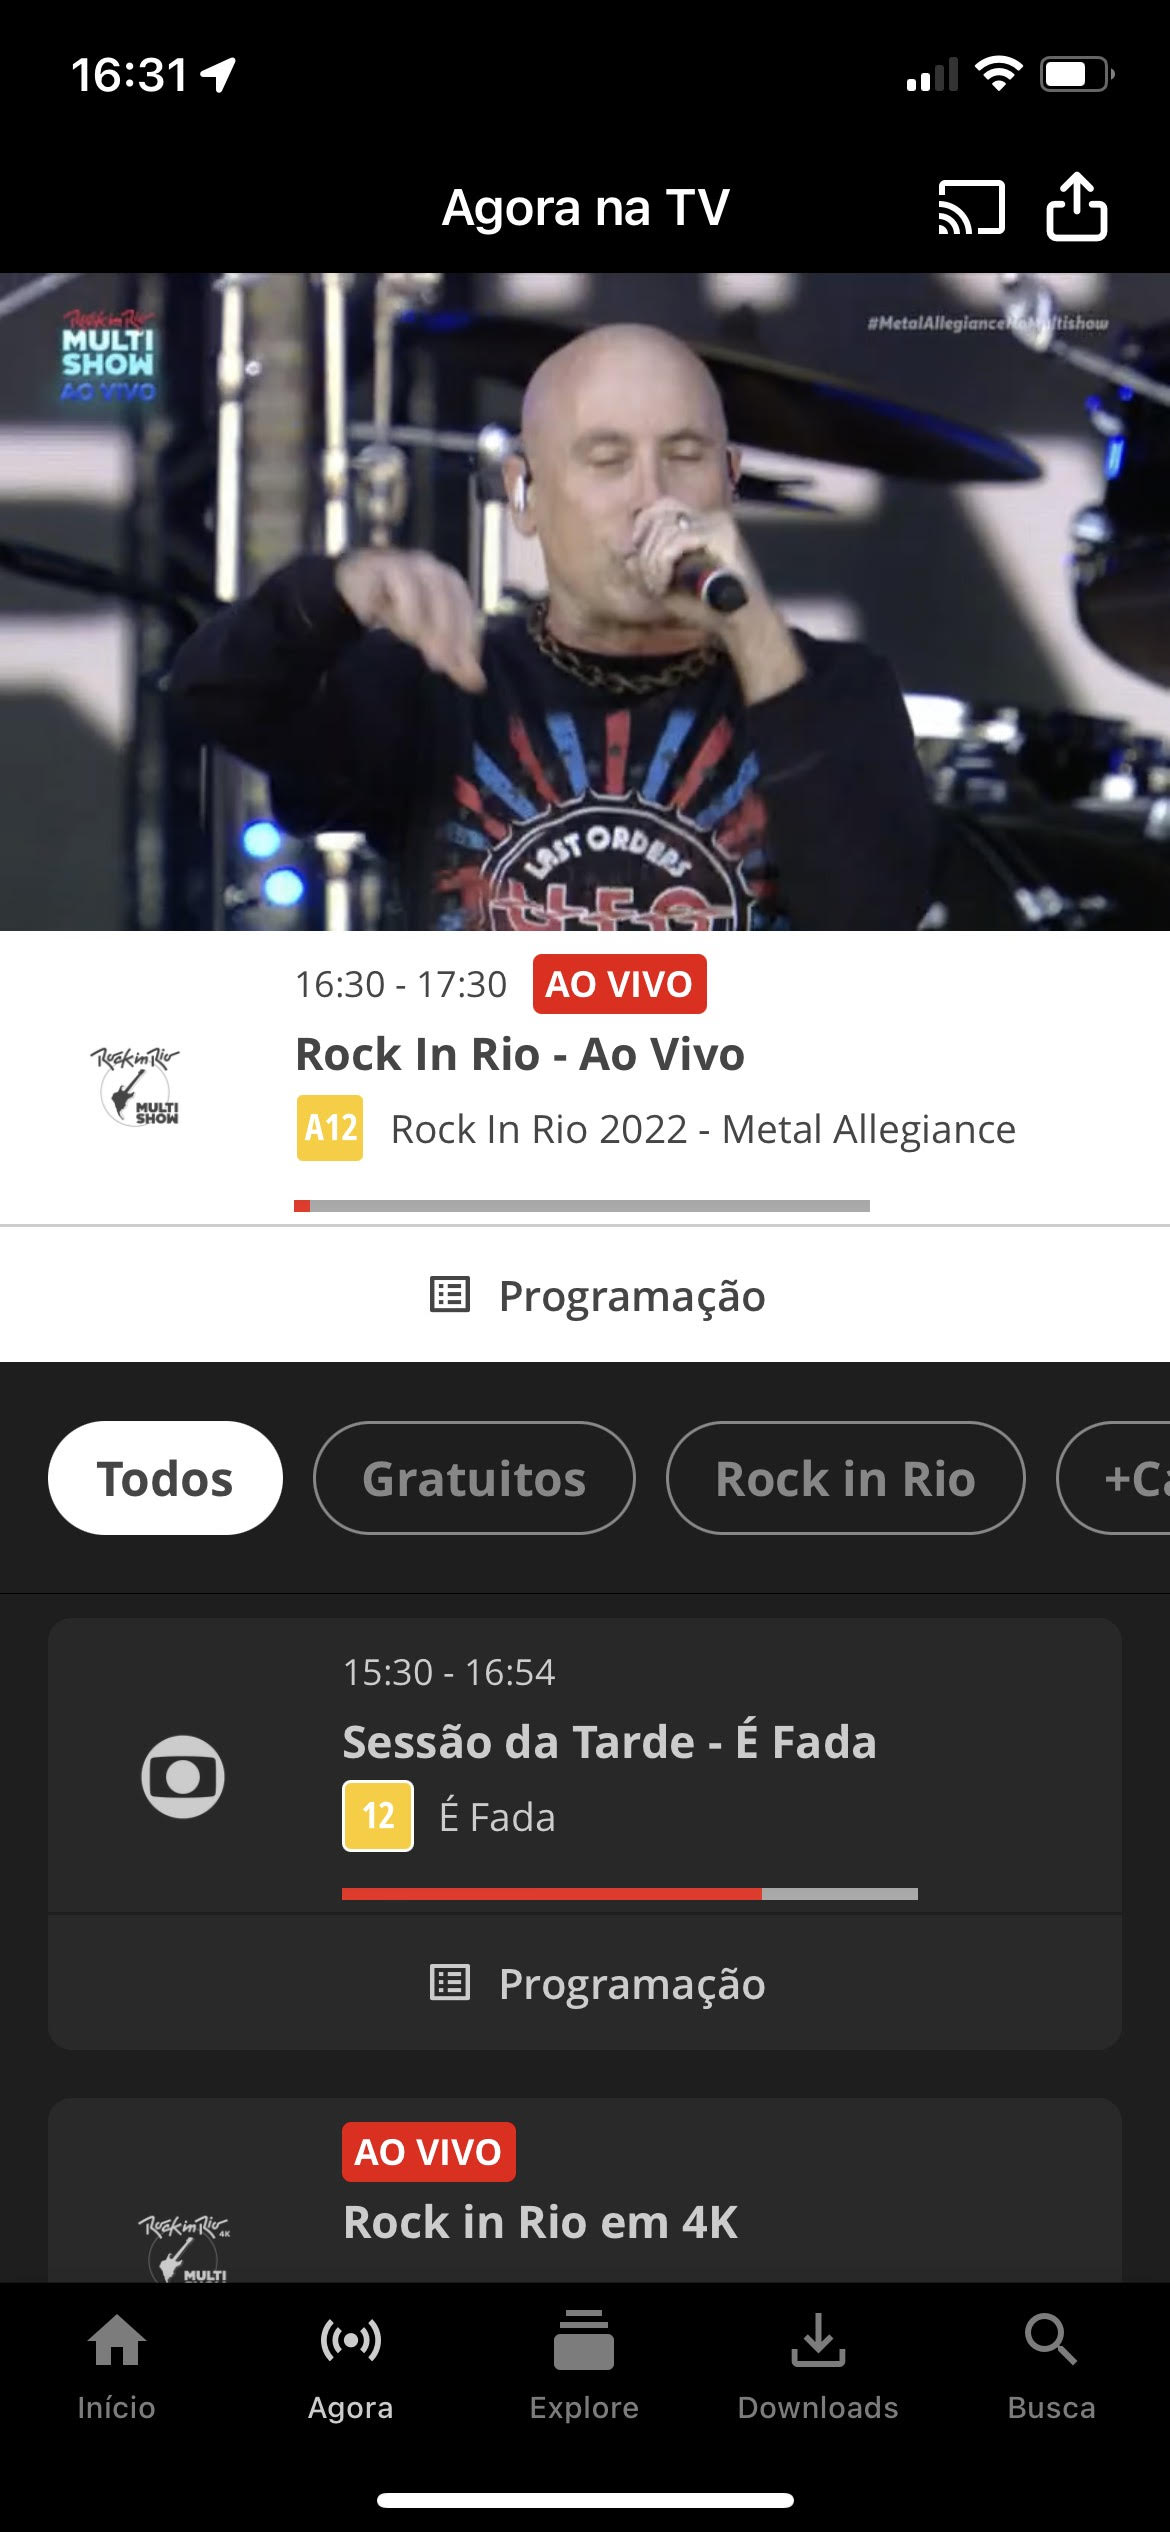 Agora na Tv Rock In Rio